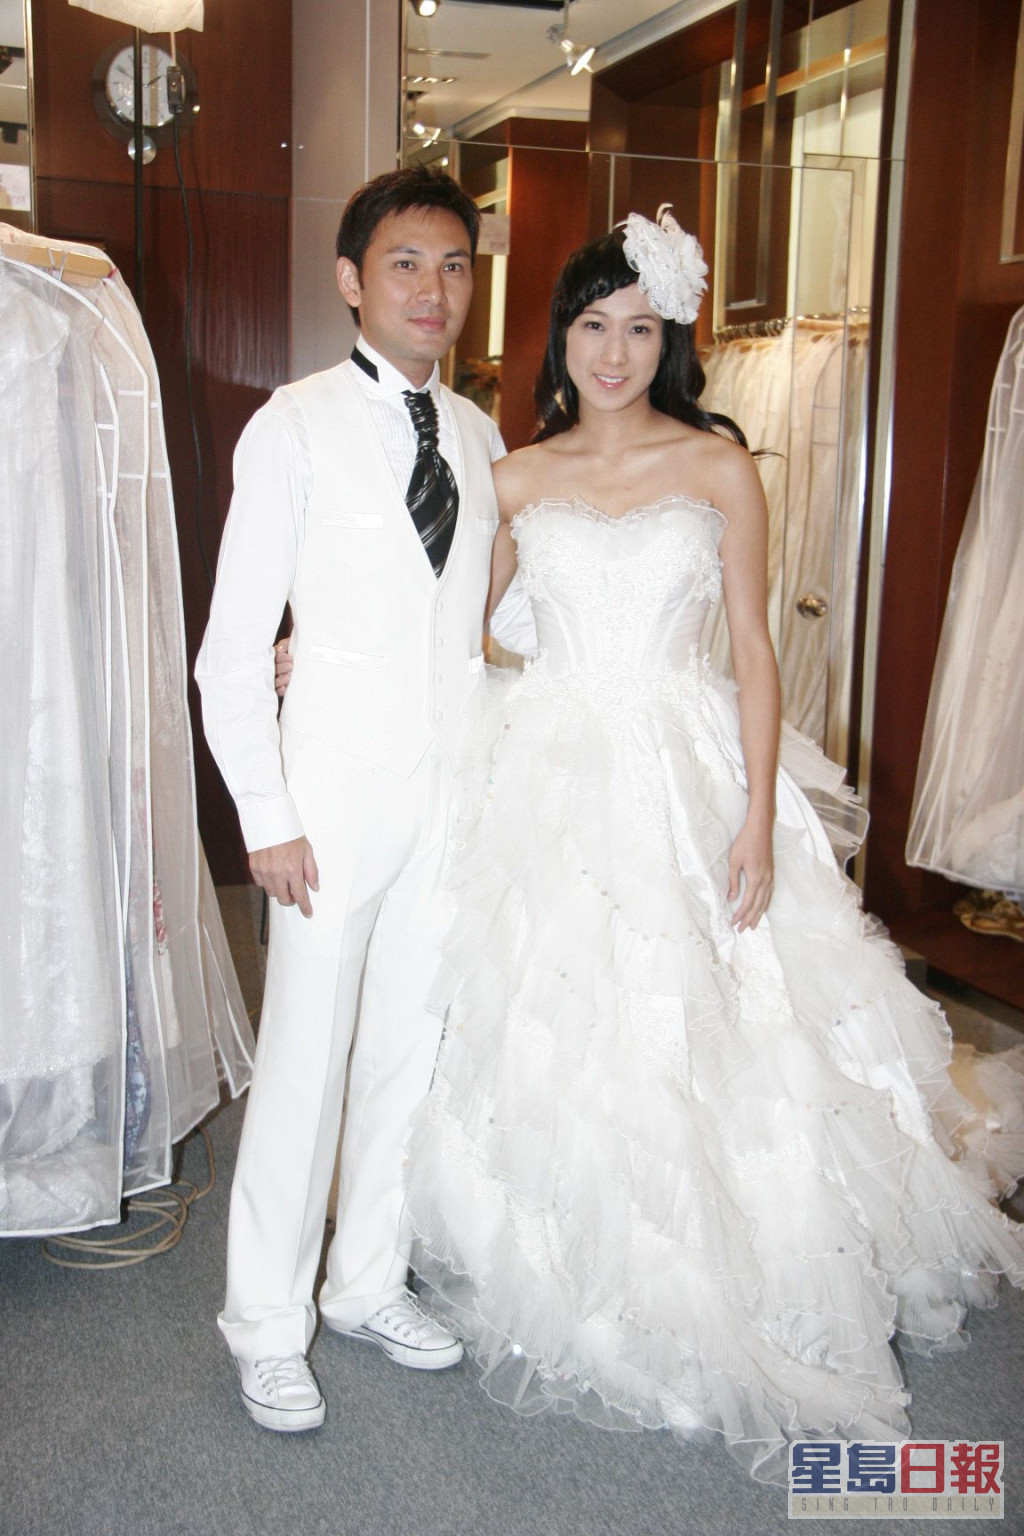 锺嘉欣在第二辑原本准备嫁林文龙。